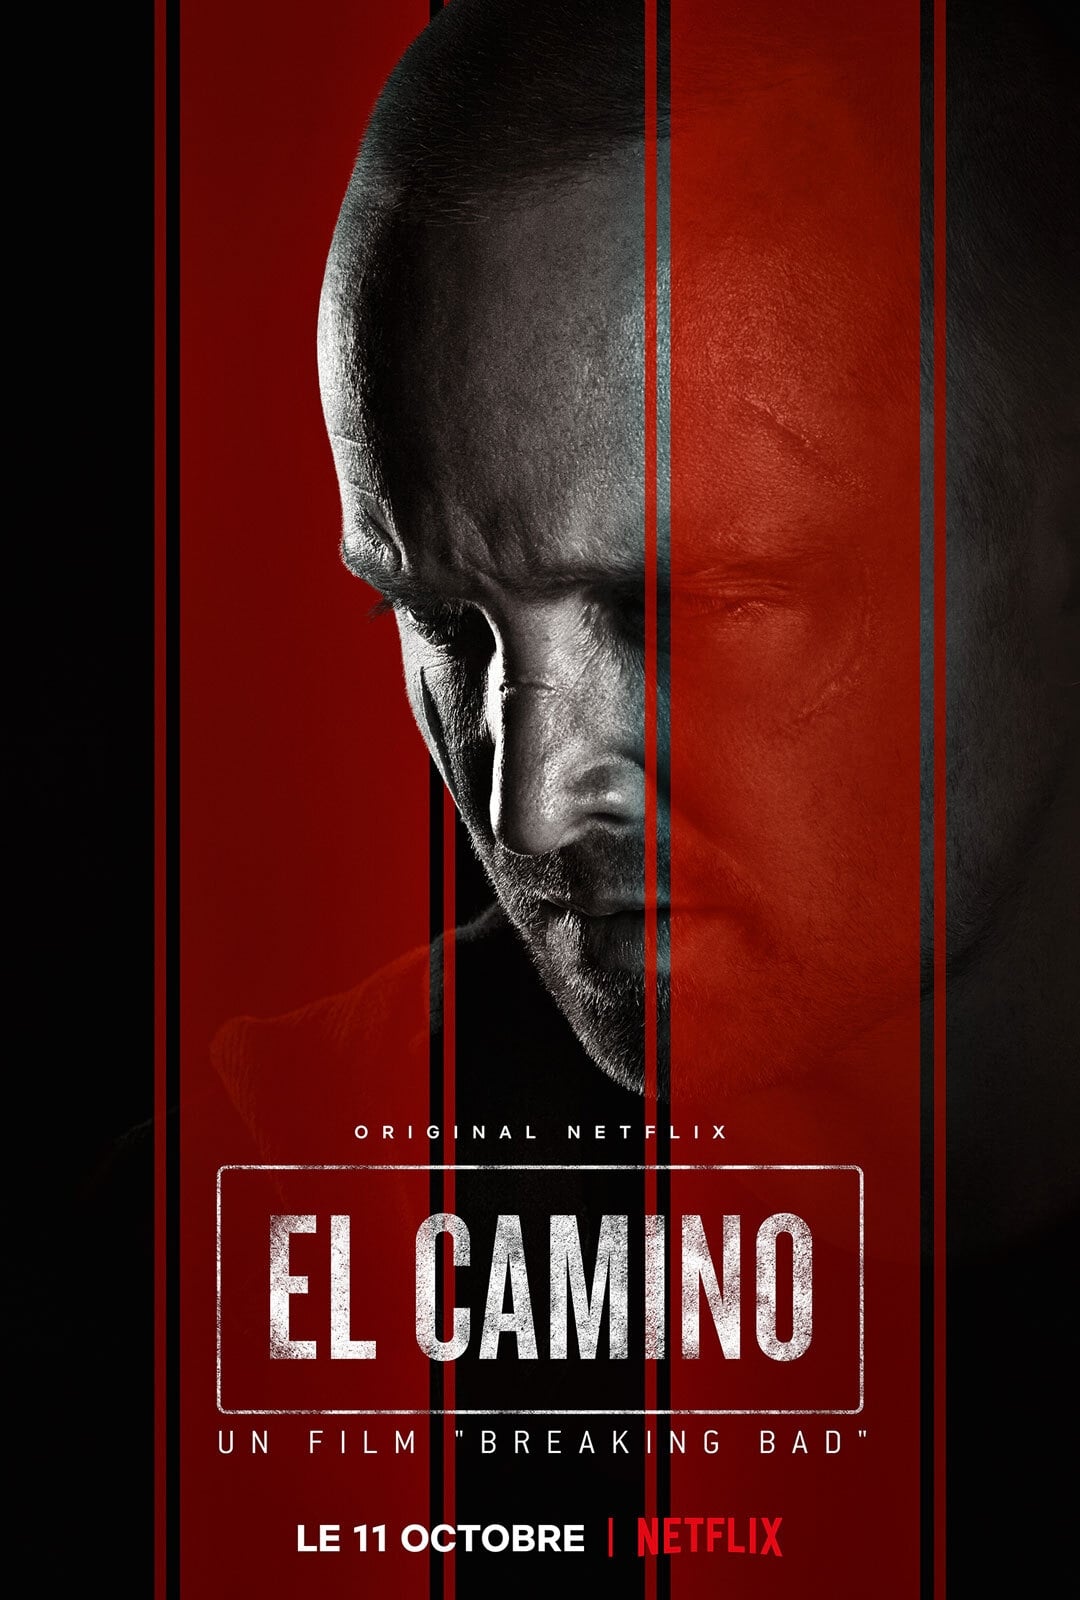 El Camino : Un film "Breaking Bad" streaming